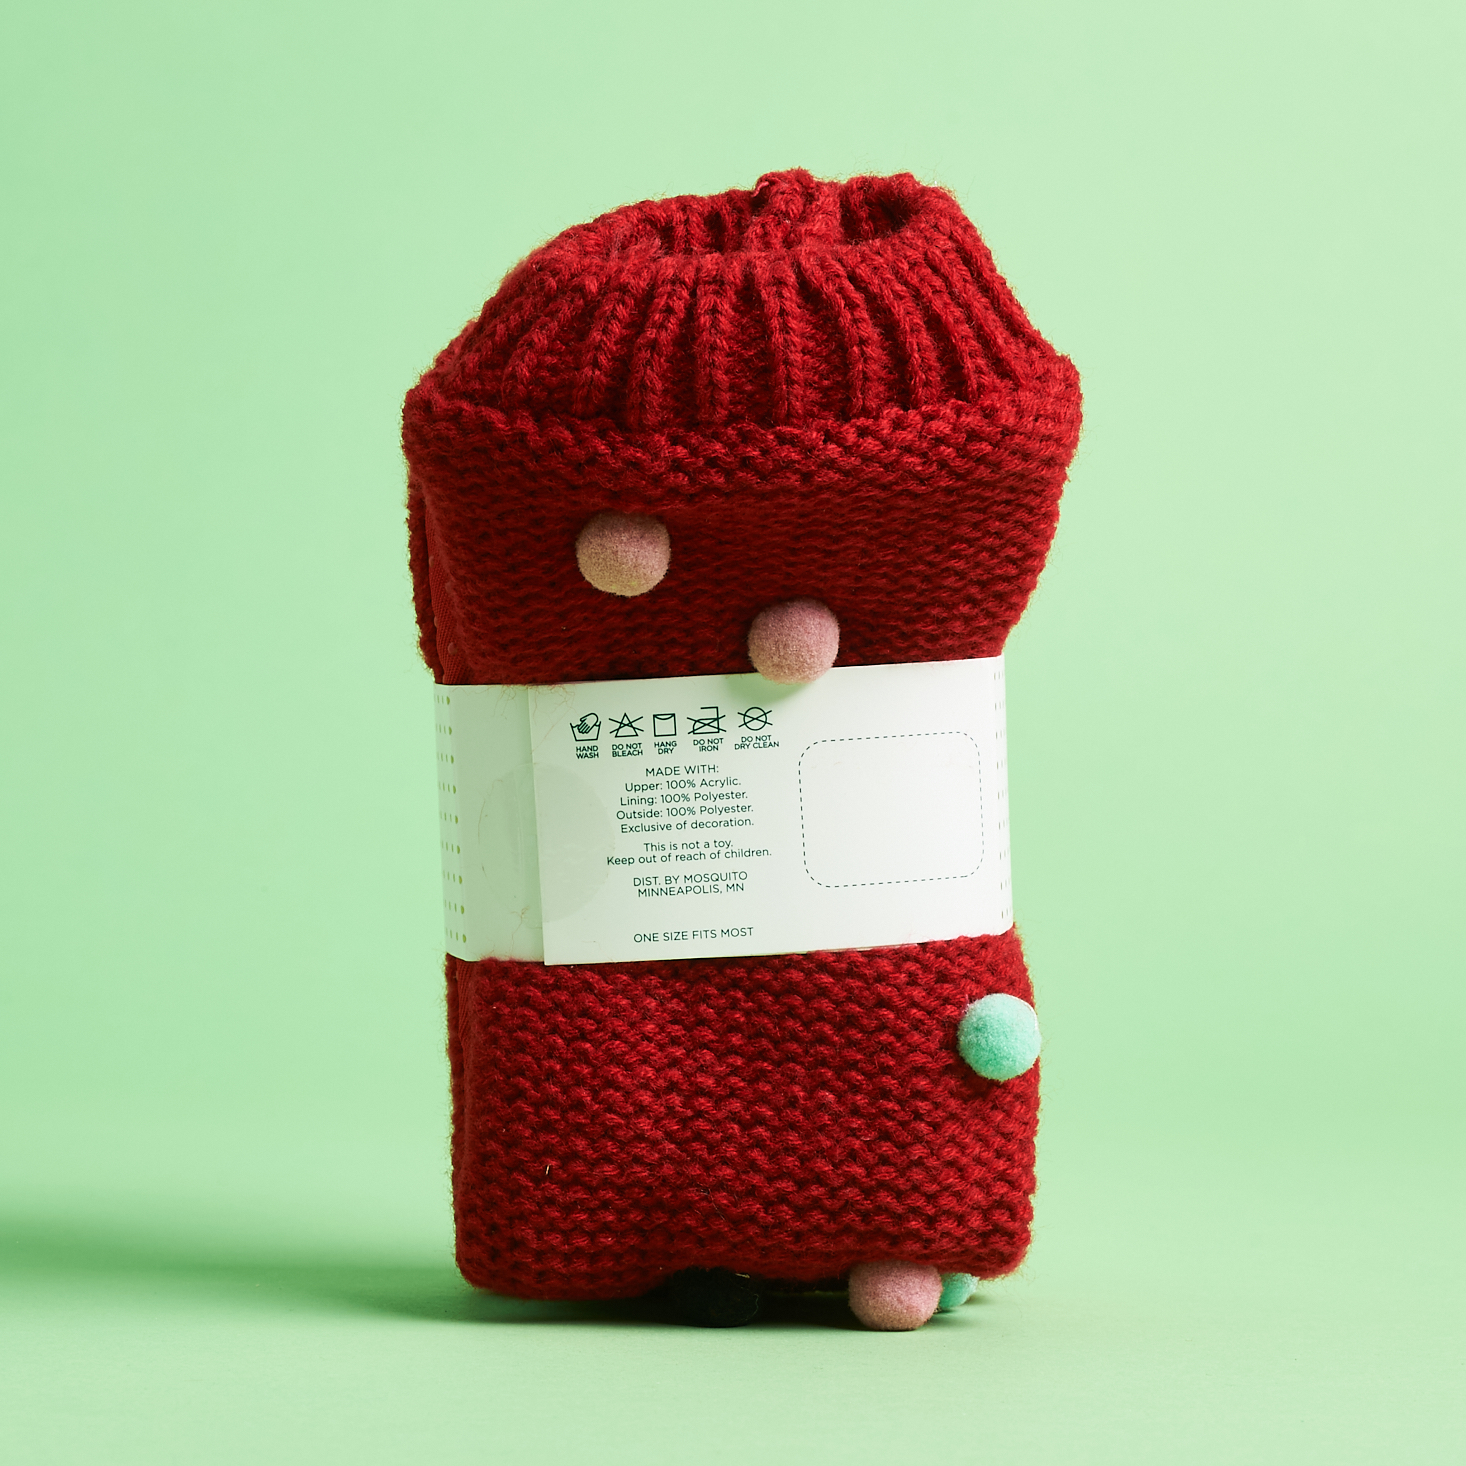 Paper Source Winter 2020 red slipper socks